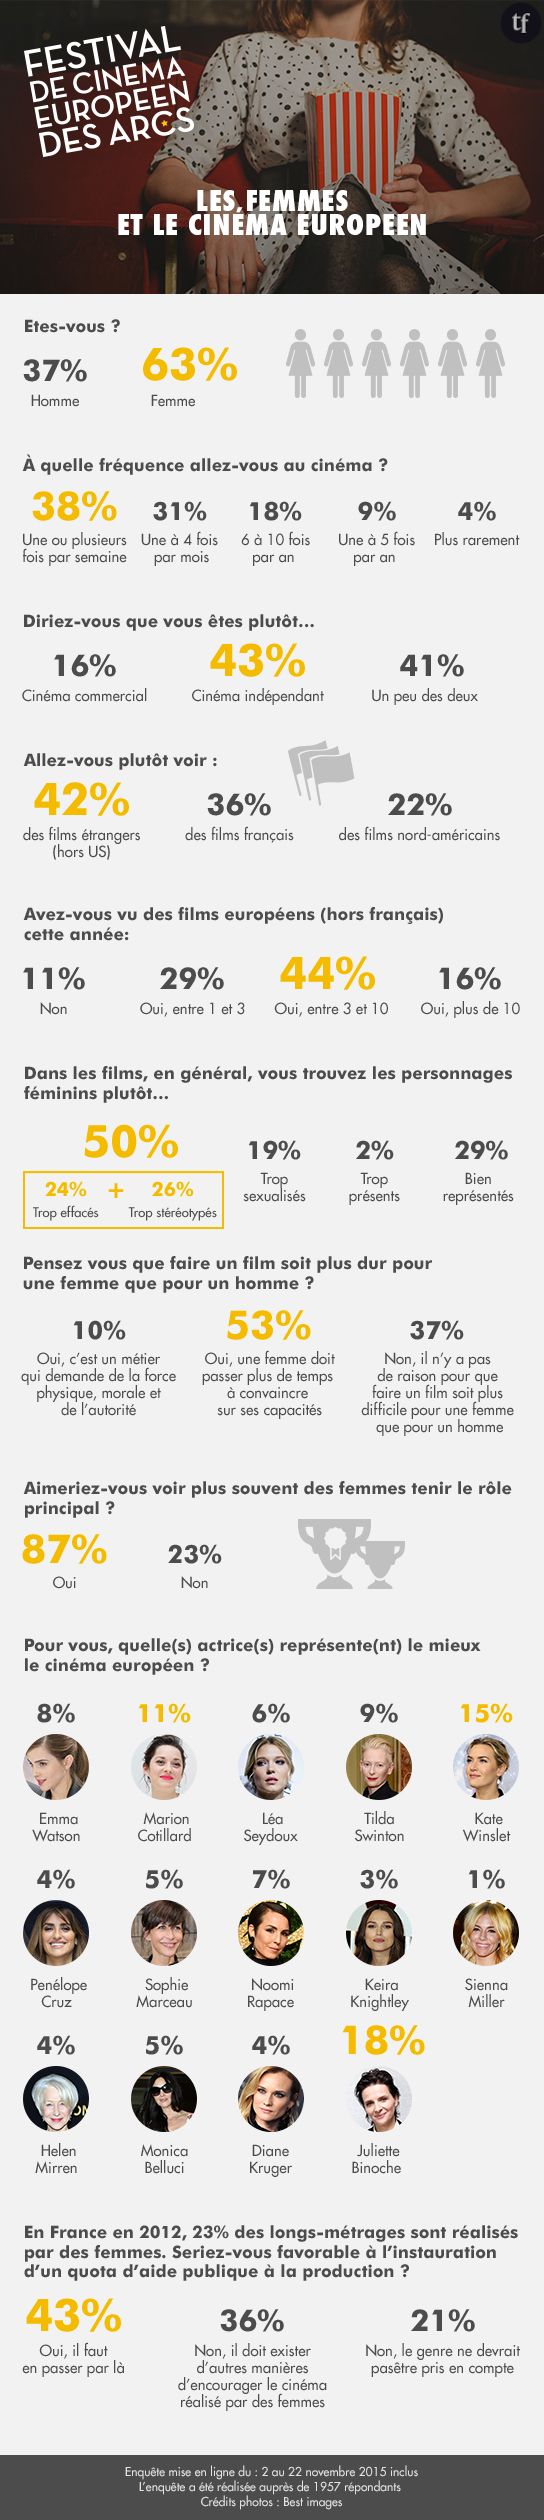 La place des femmes dans le cinéma européen en 2015 : l'enquête Terrafemina